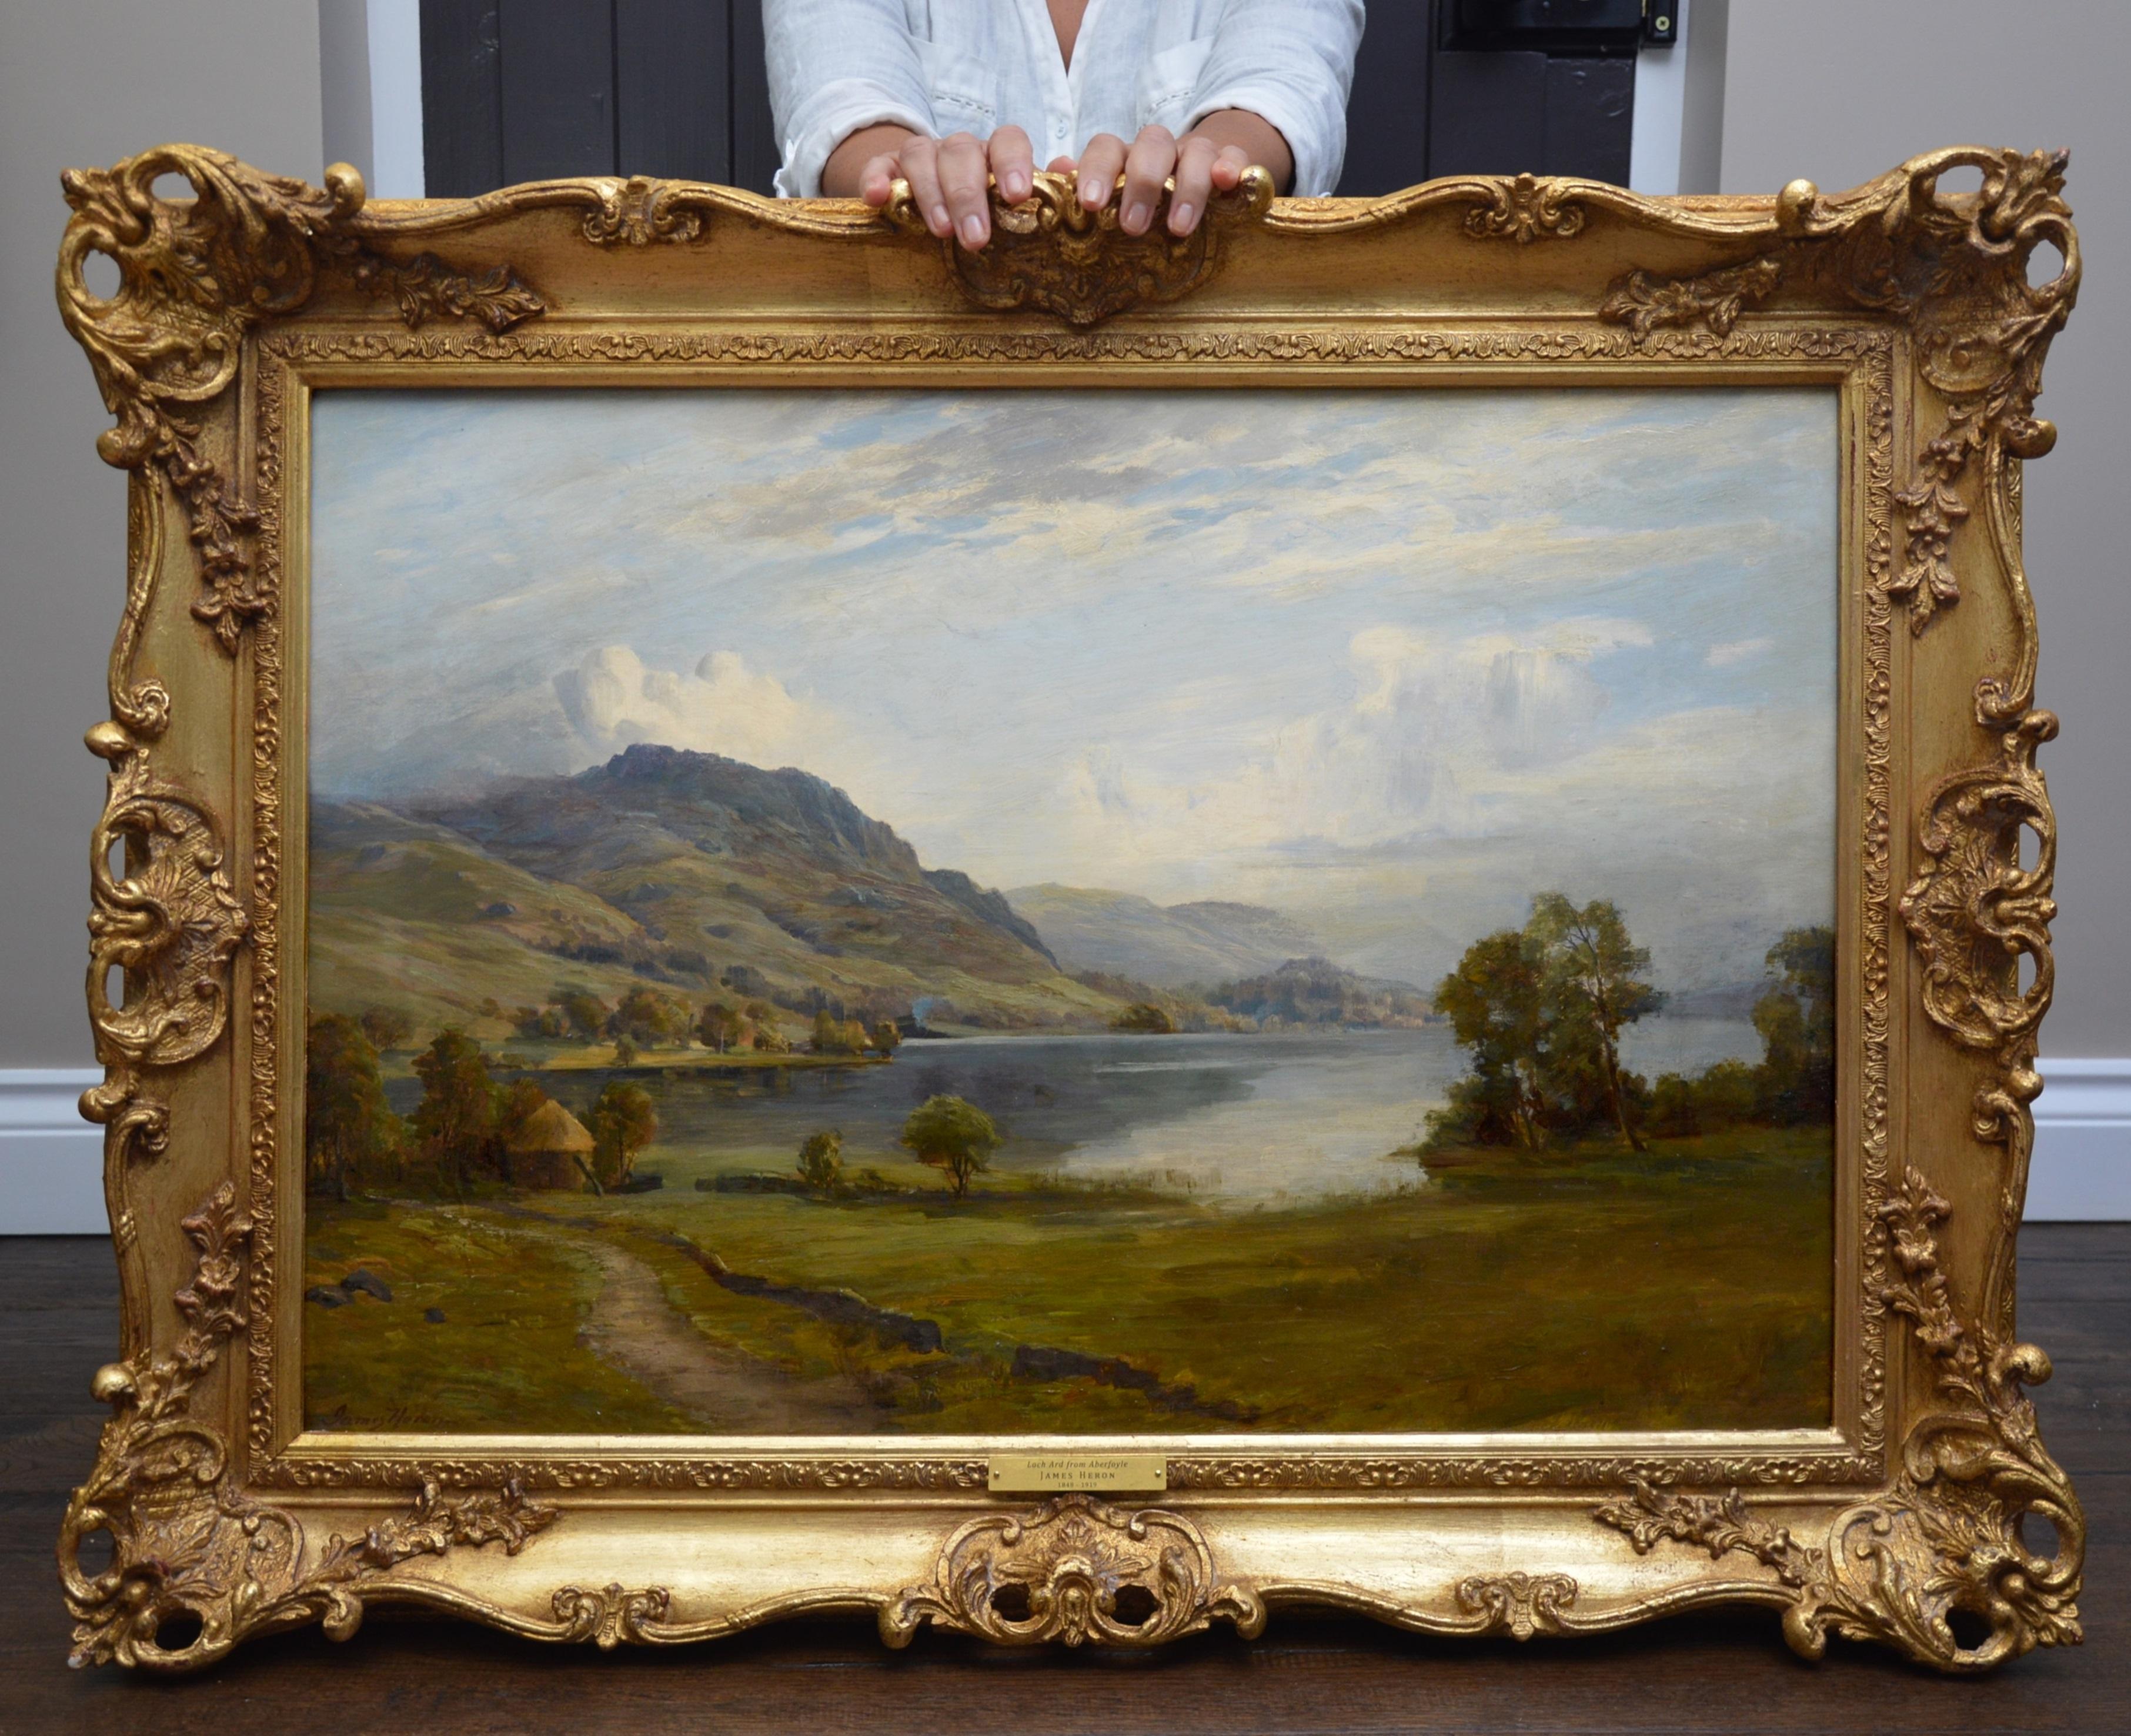 Loch Ard from Aberfoyle - Paysage écossais du 19ème siècle - Peinture à l'huile - Painting de James Heron